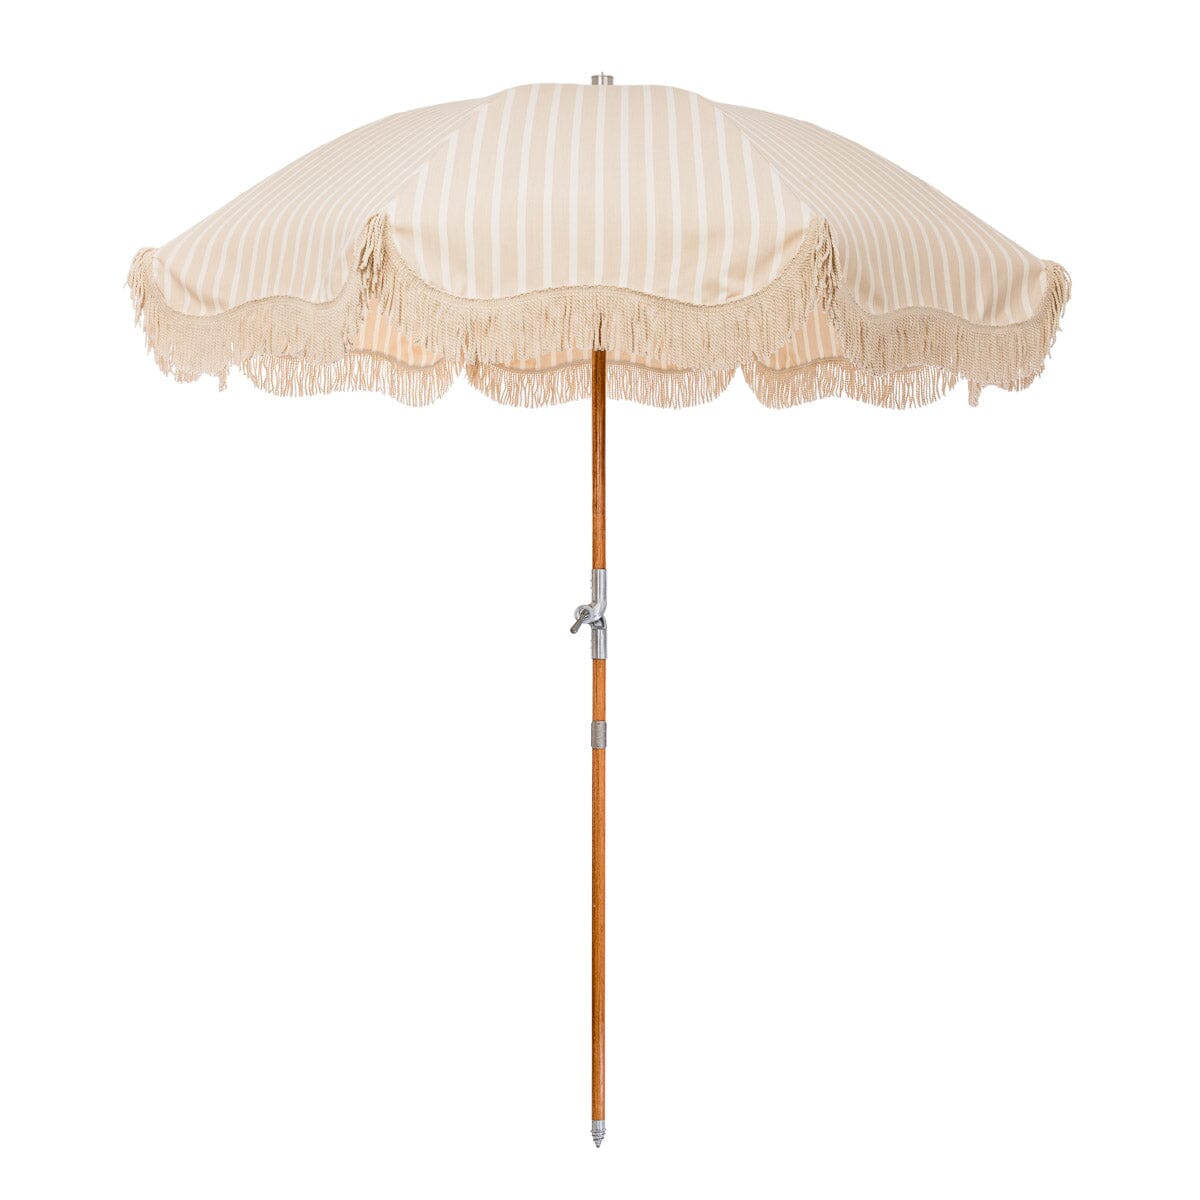 The Premium Beach Umbrella - Monaco Natural Stripe Premium Beach Umbrella Business & Pleasure Co Aus 